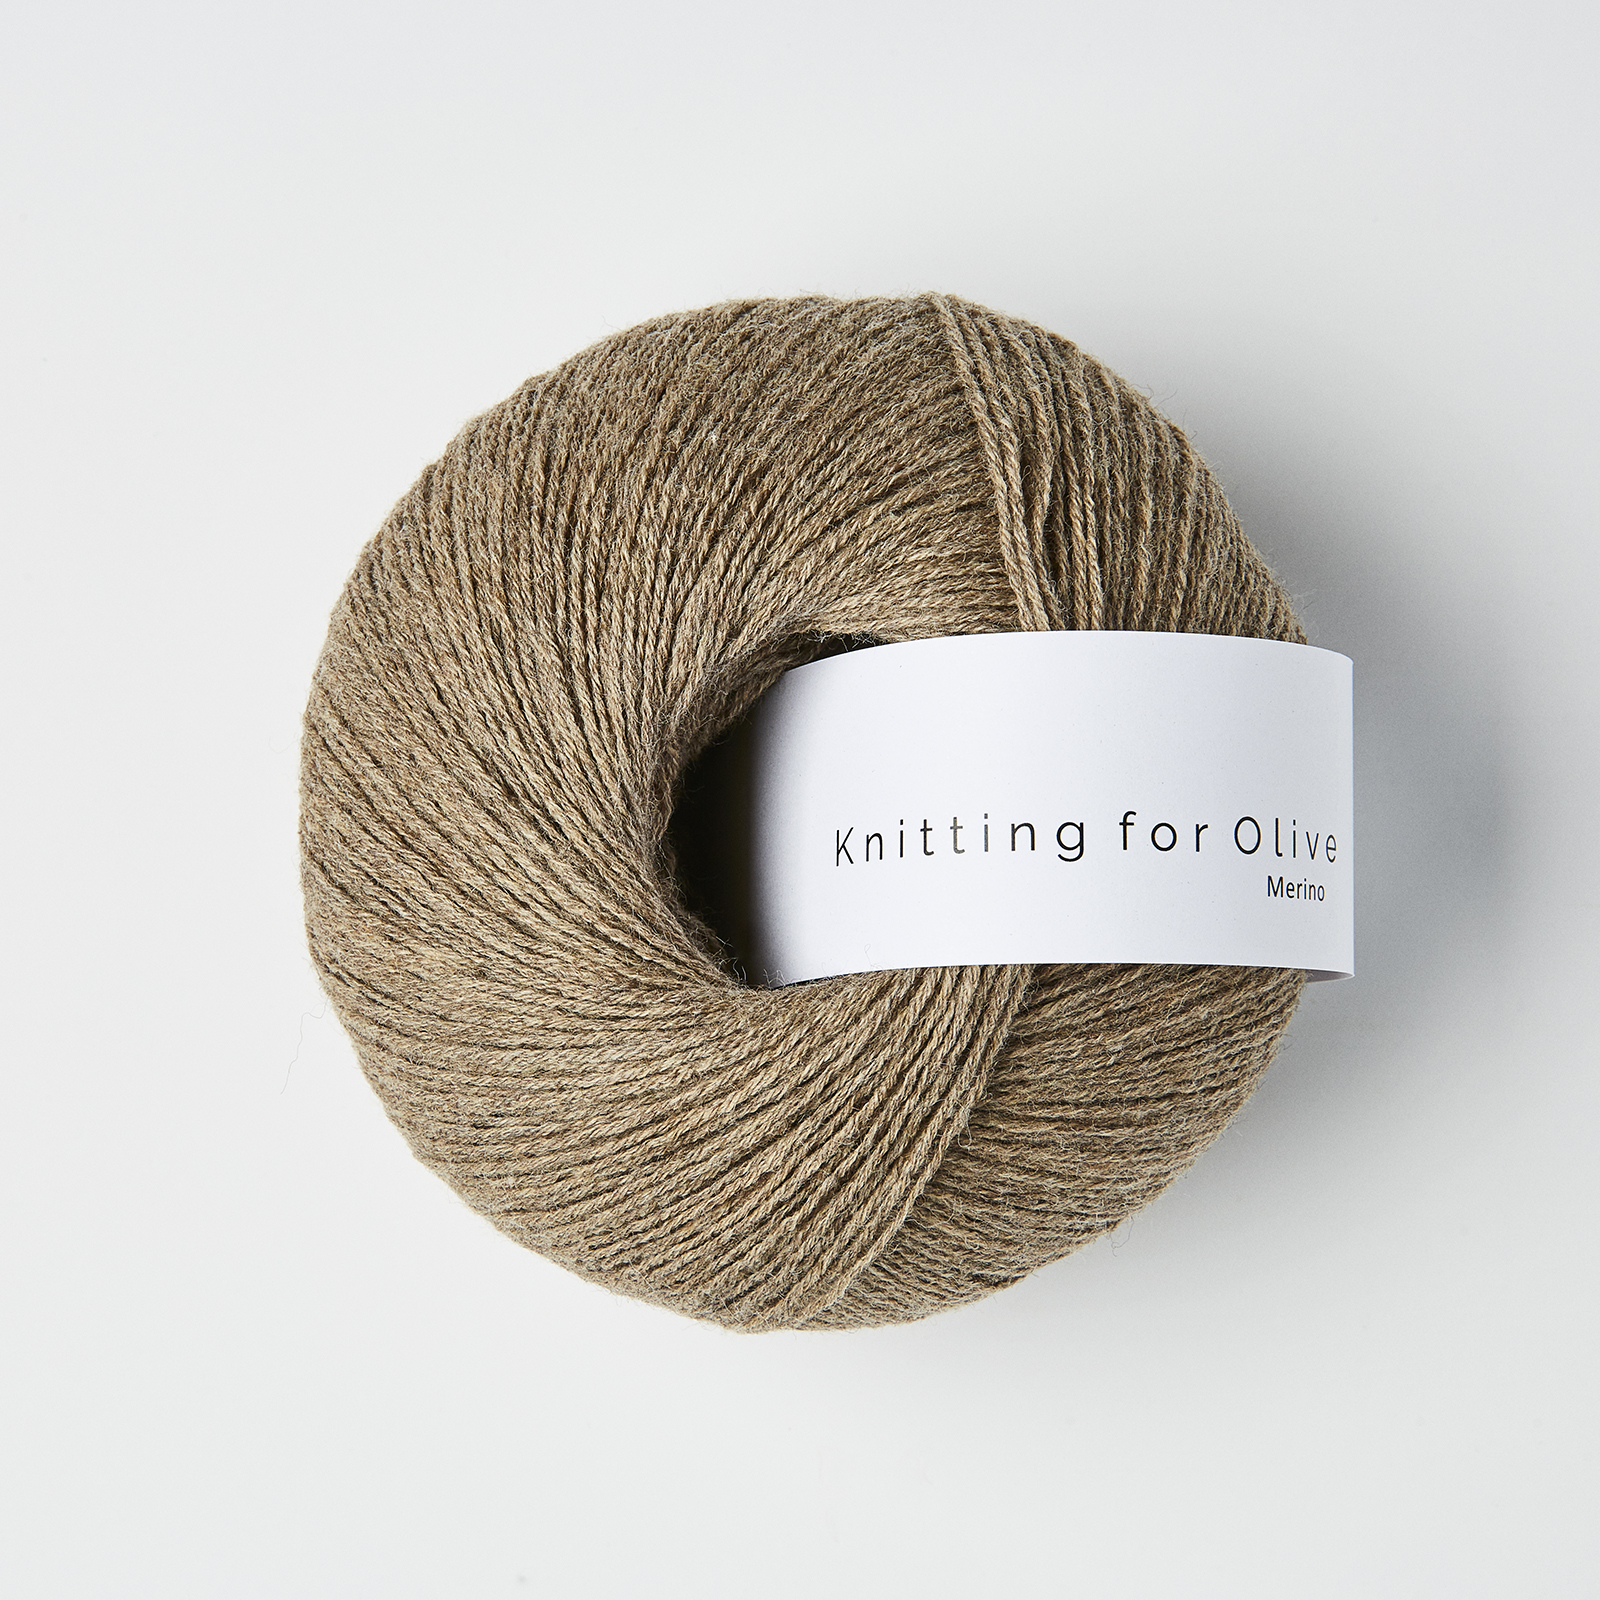 Merino (Knitting for Olive): nature